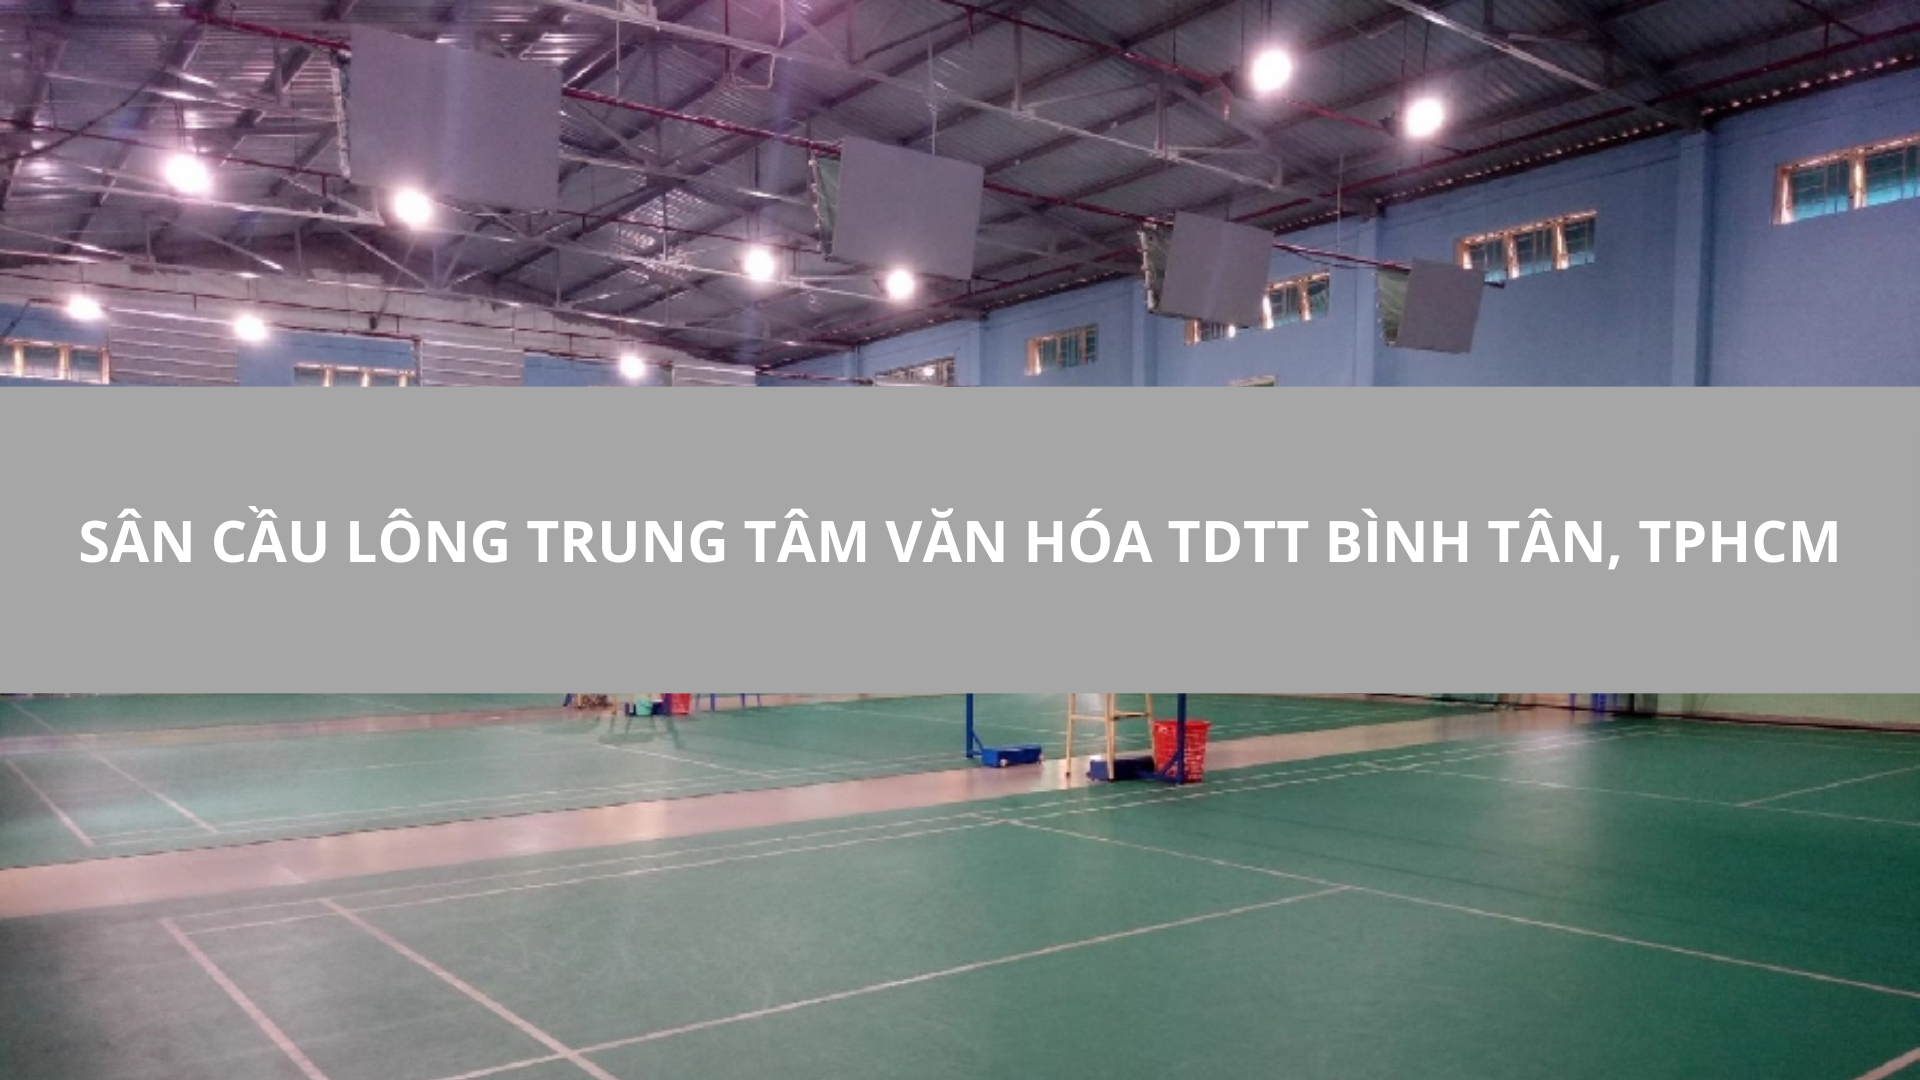 Sân Cầu Lông Trung tâm văn hóa TDTT Bình Tân, TPHCM